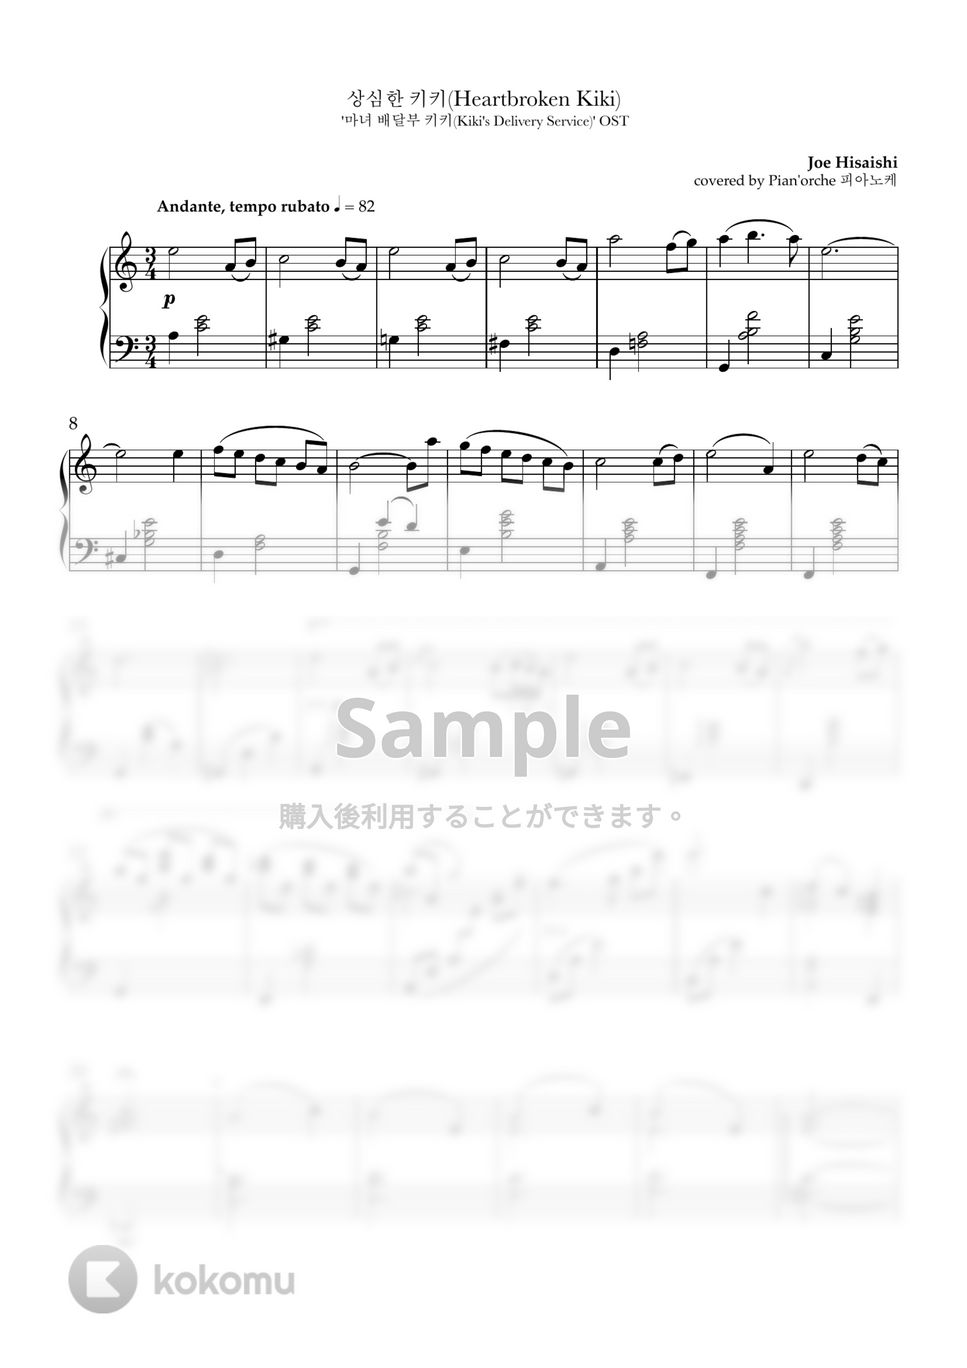 魔女の宅急便 OST - 傷心のキキ by Pian'orche